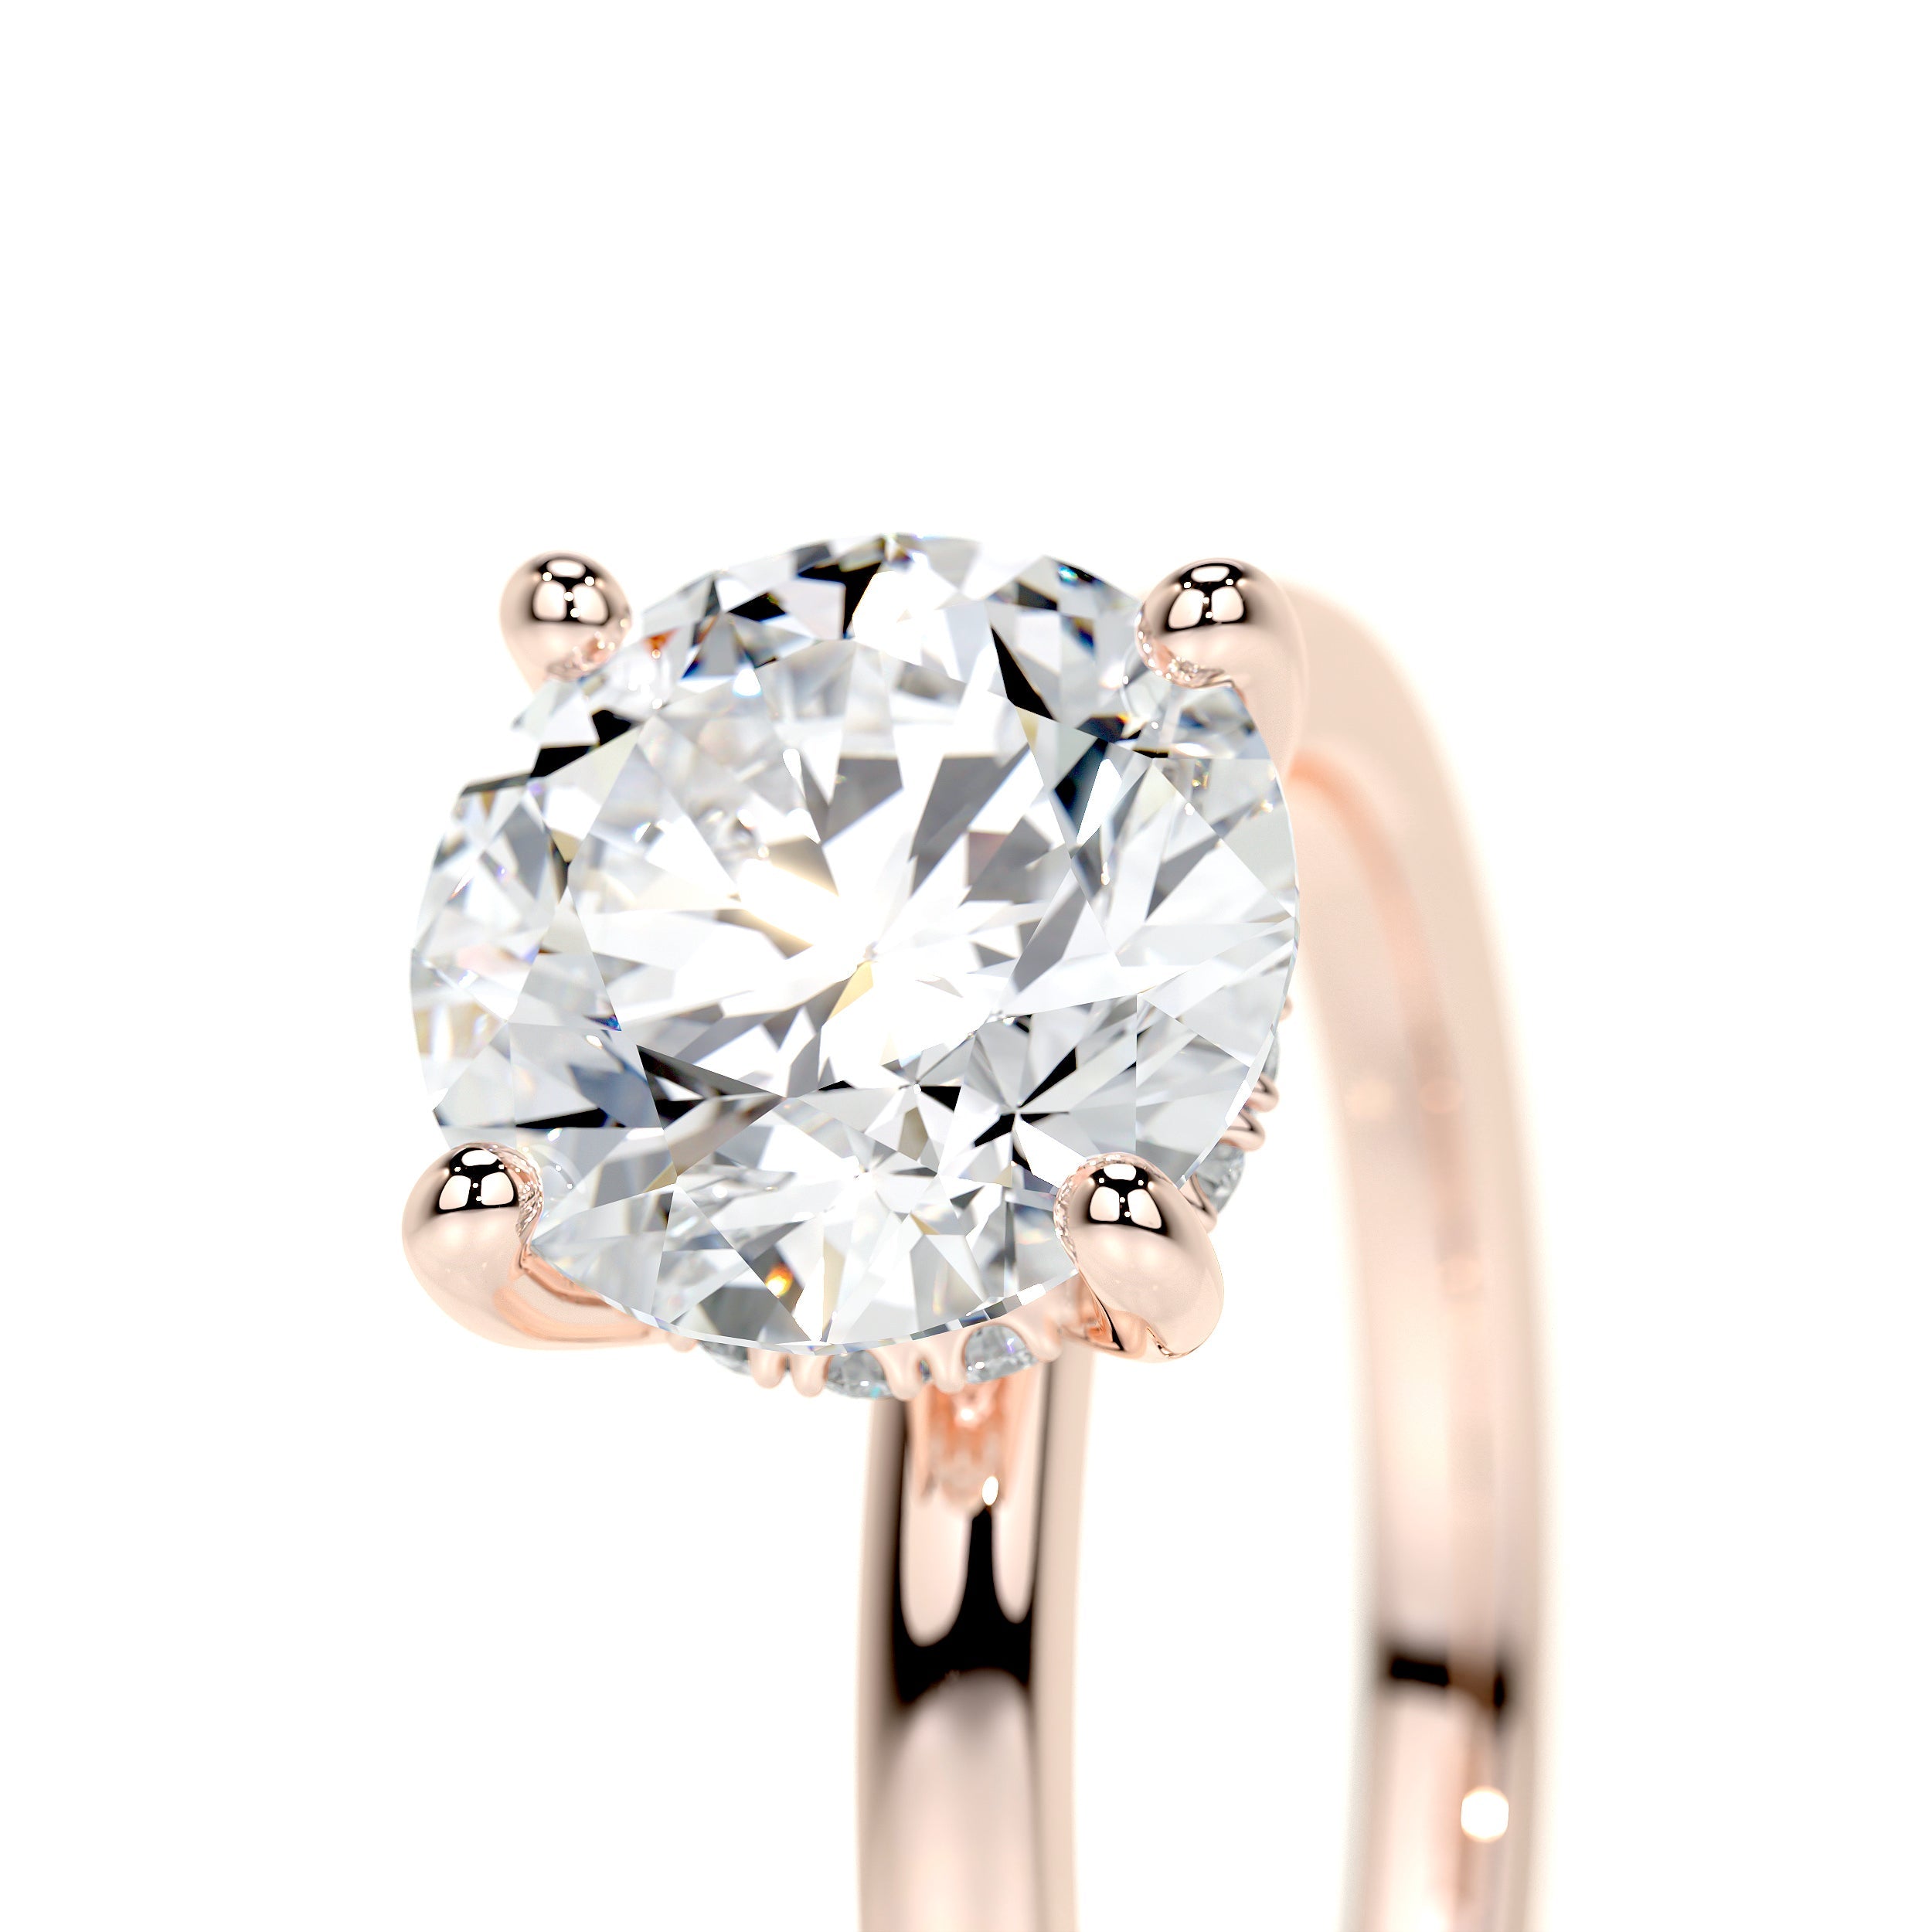 Cynthia Lab Grown Diamond Ring   (2.1 Carat) -14K Rose Gold